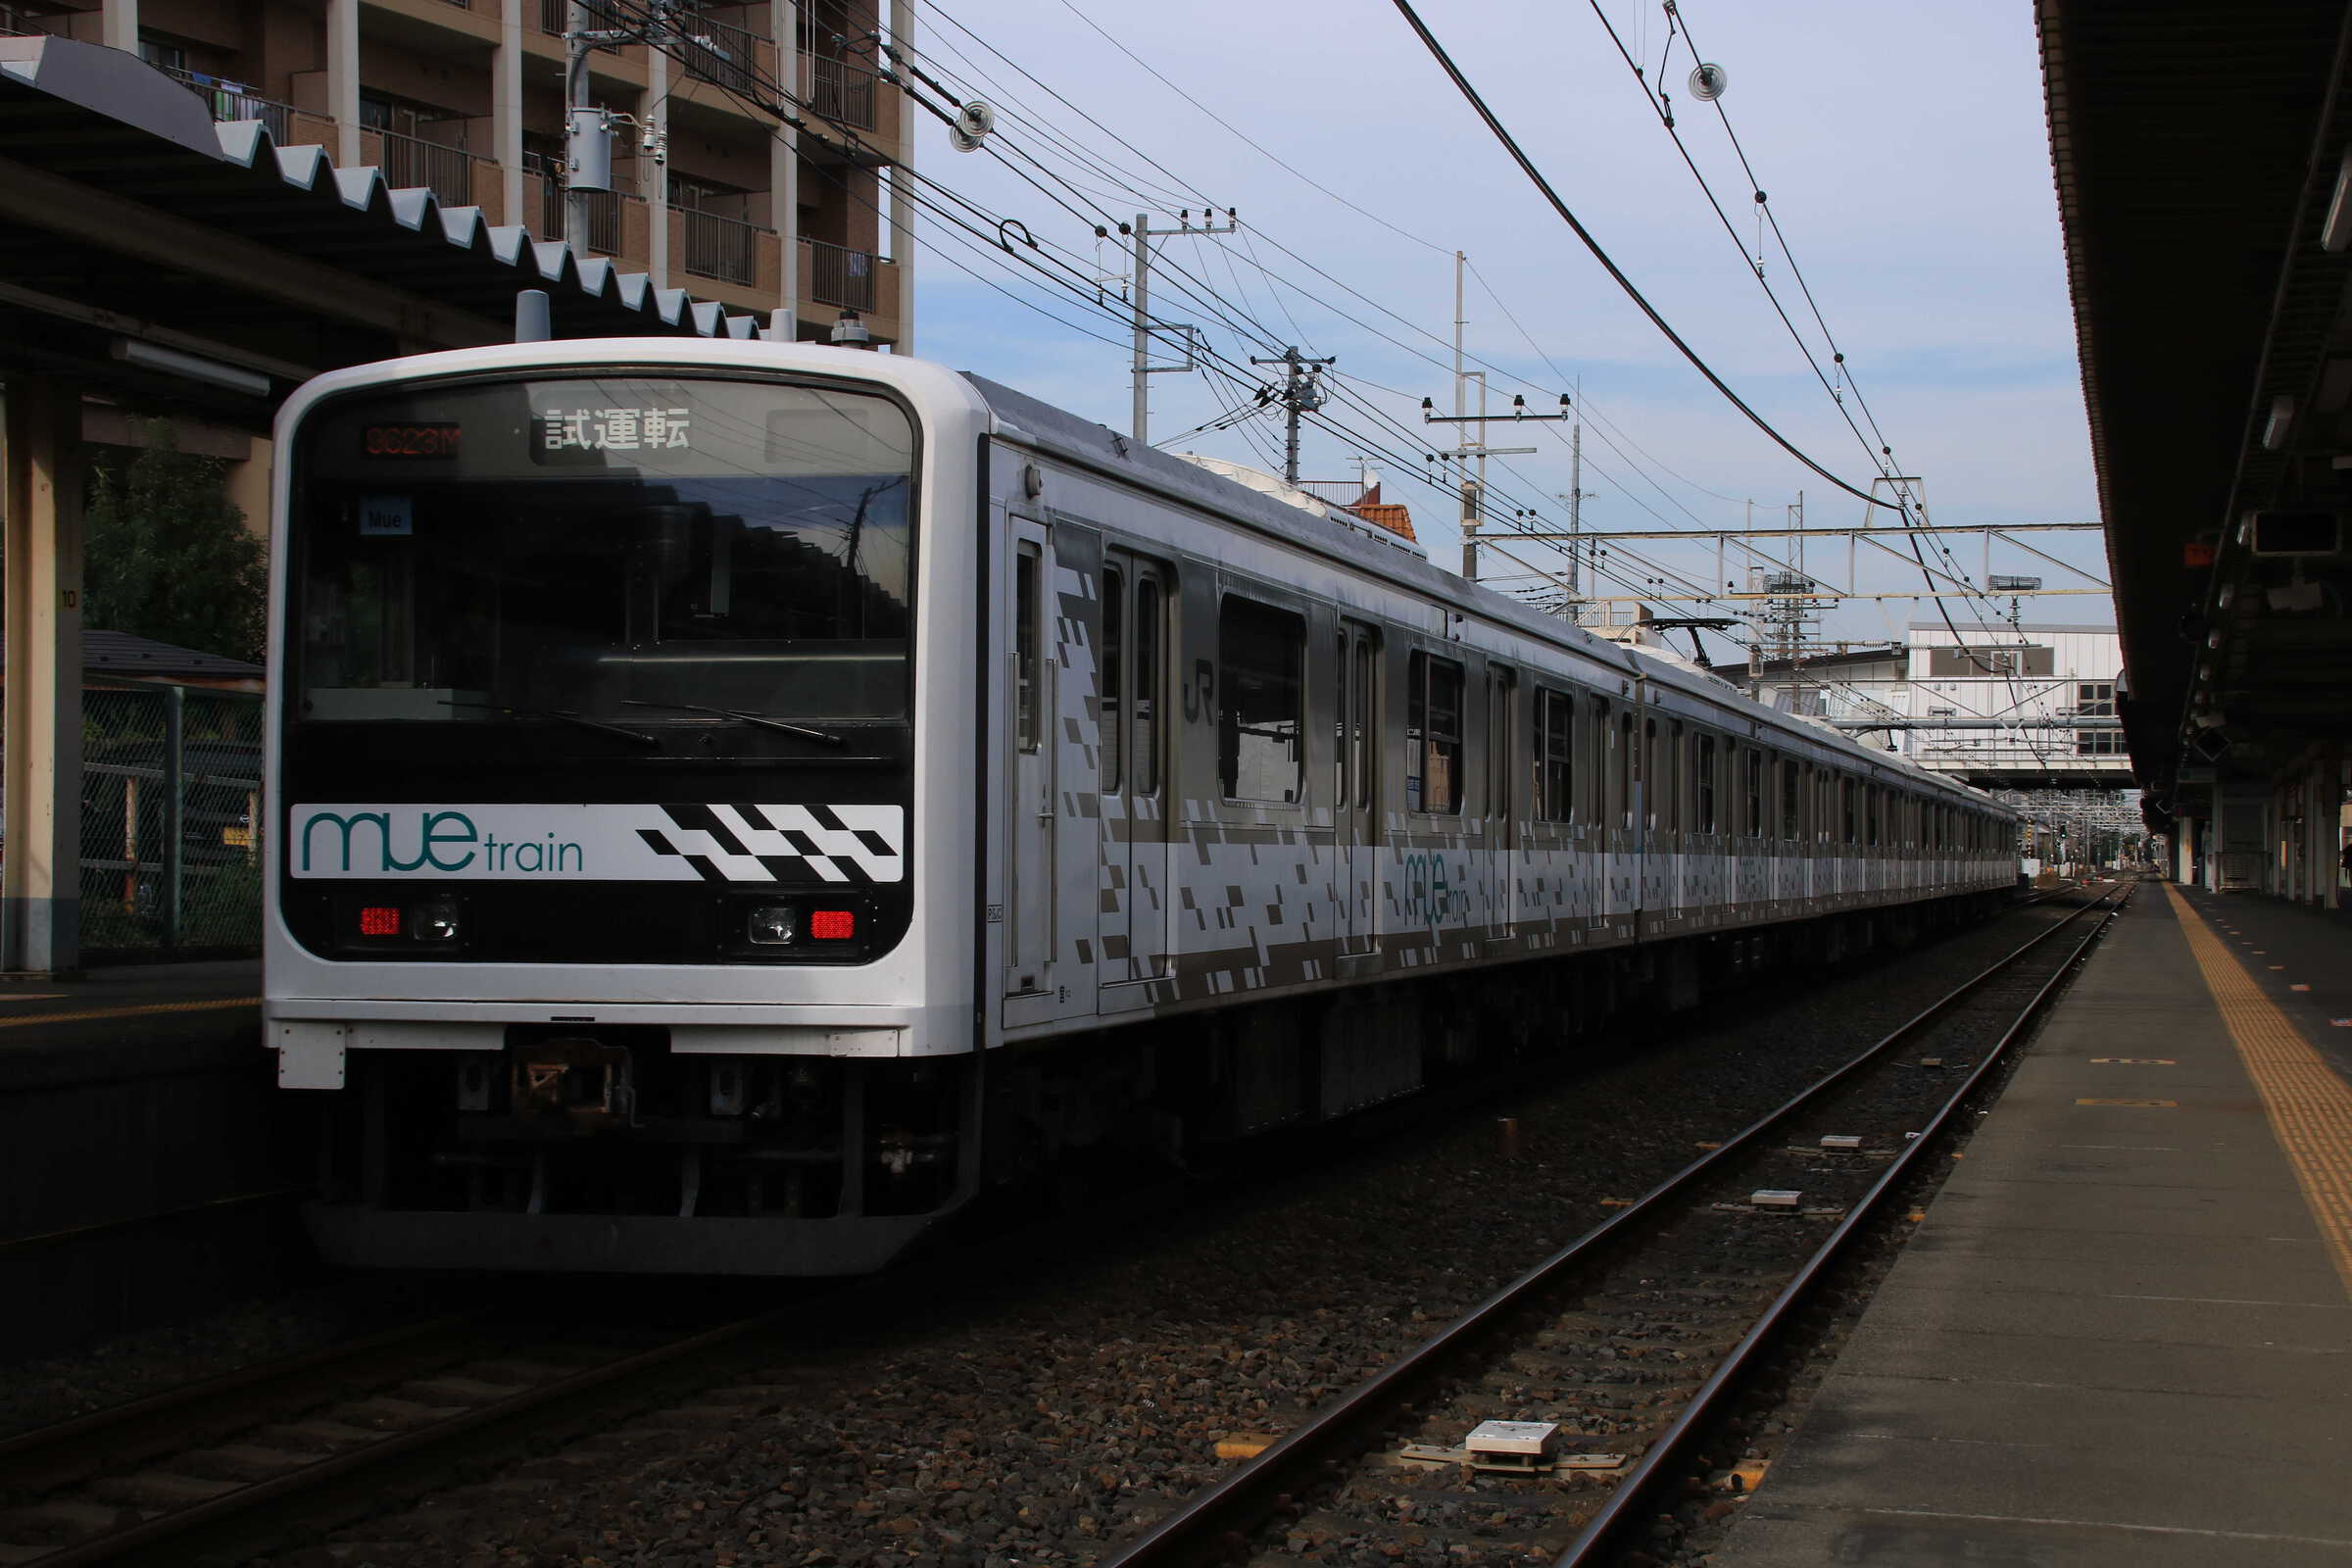 試9623M 209系 “Mue Train” 宇都宮線試運転